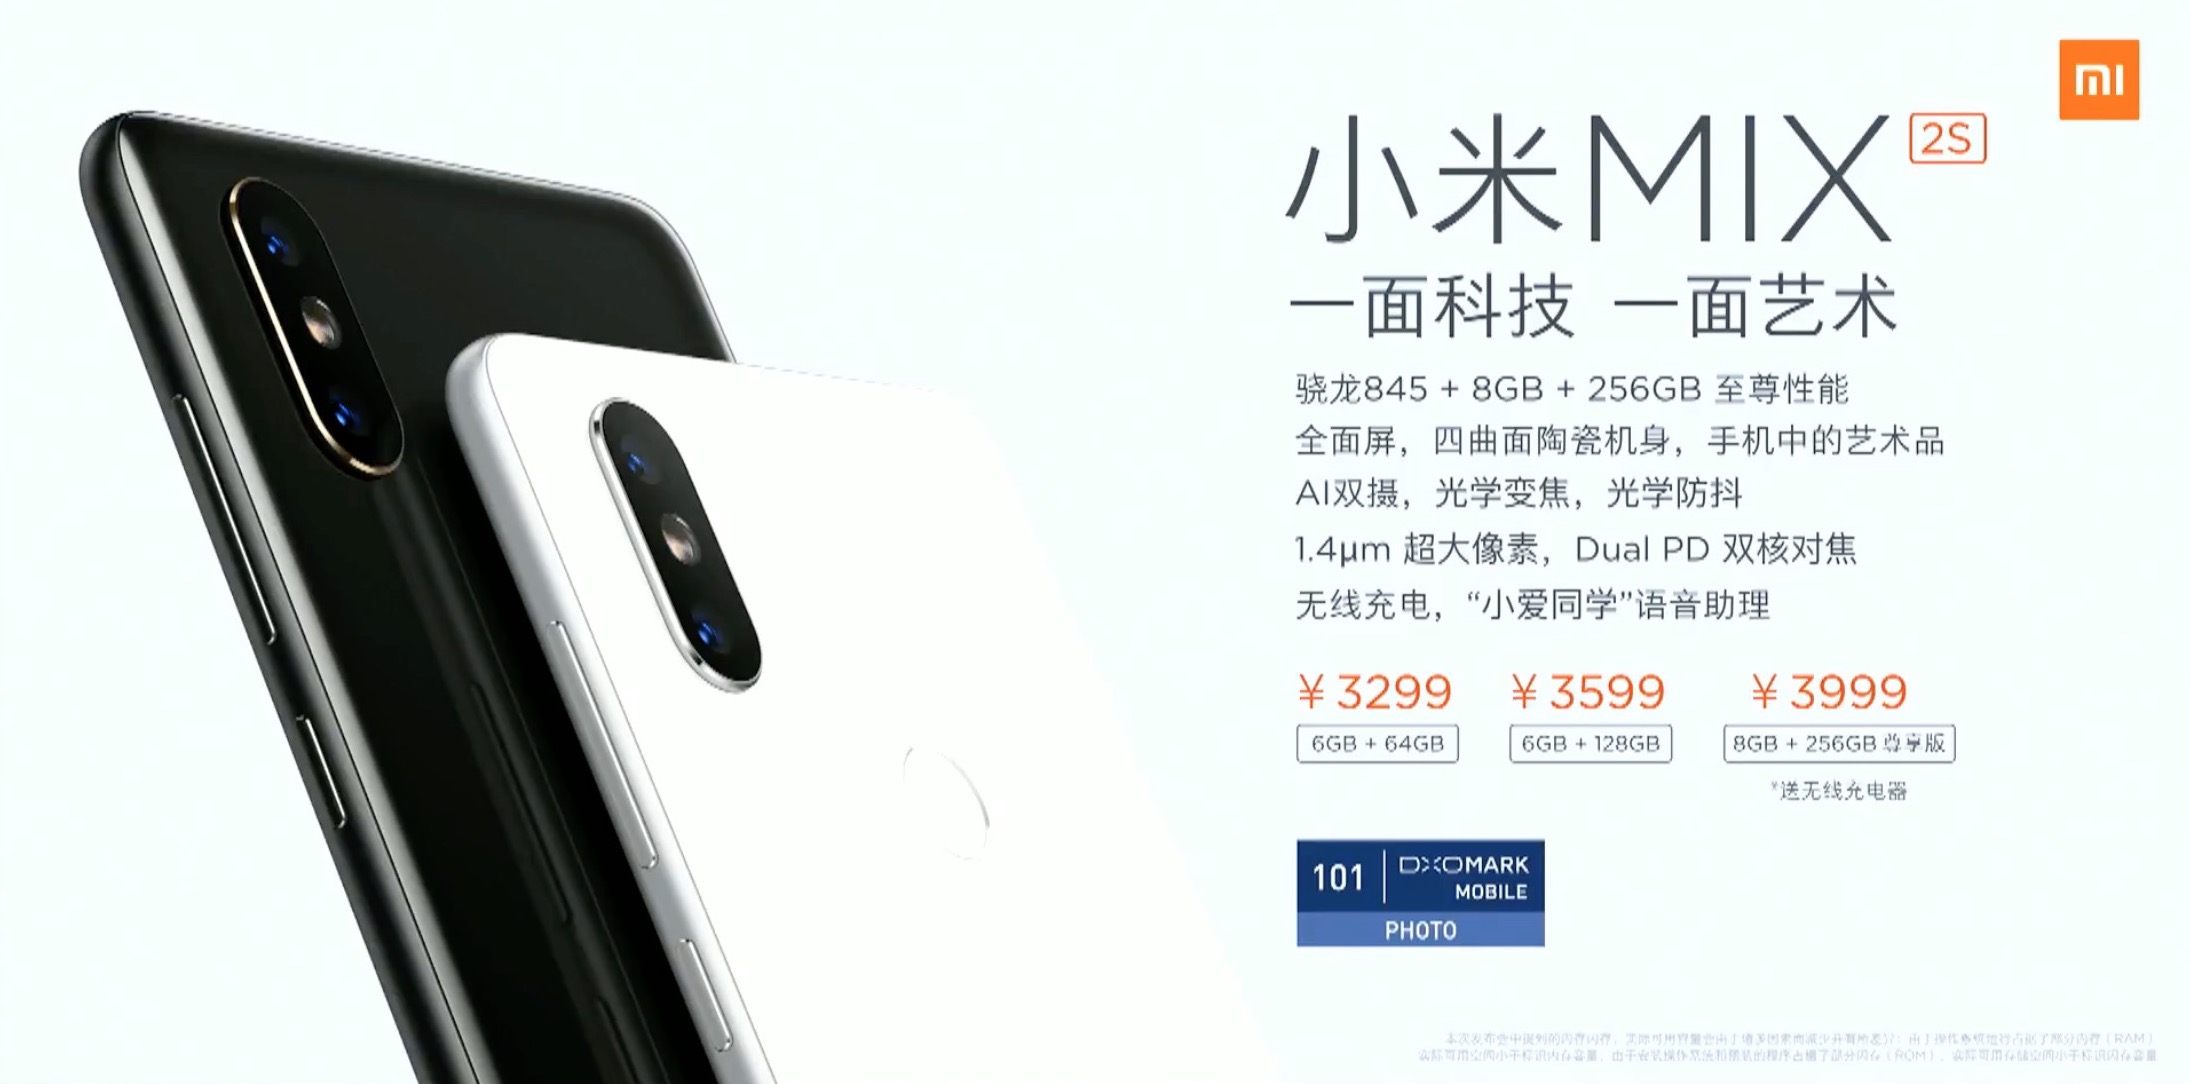 Xiaomi chính thức
ra mắt Mi MIX 2S với Snapdragon 845, 8GB/256GB, 101 điểm
chụp ảnh DxOMark, giá từ 12 triệu